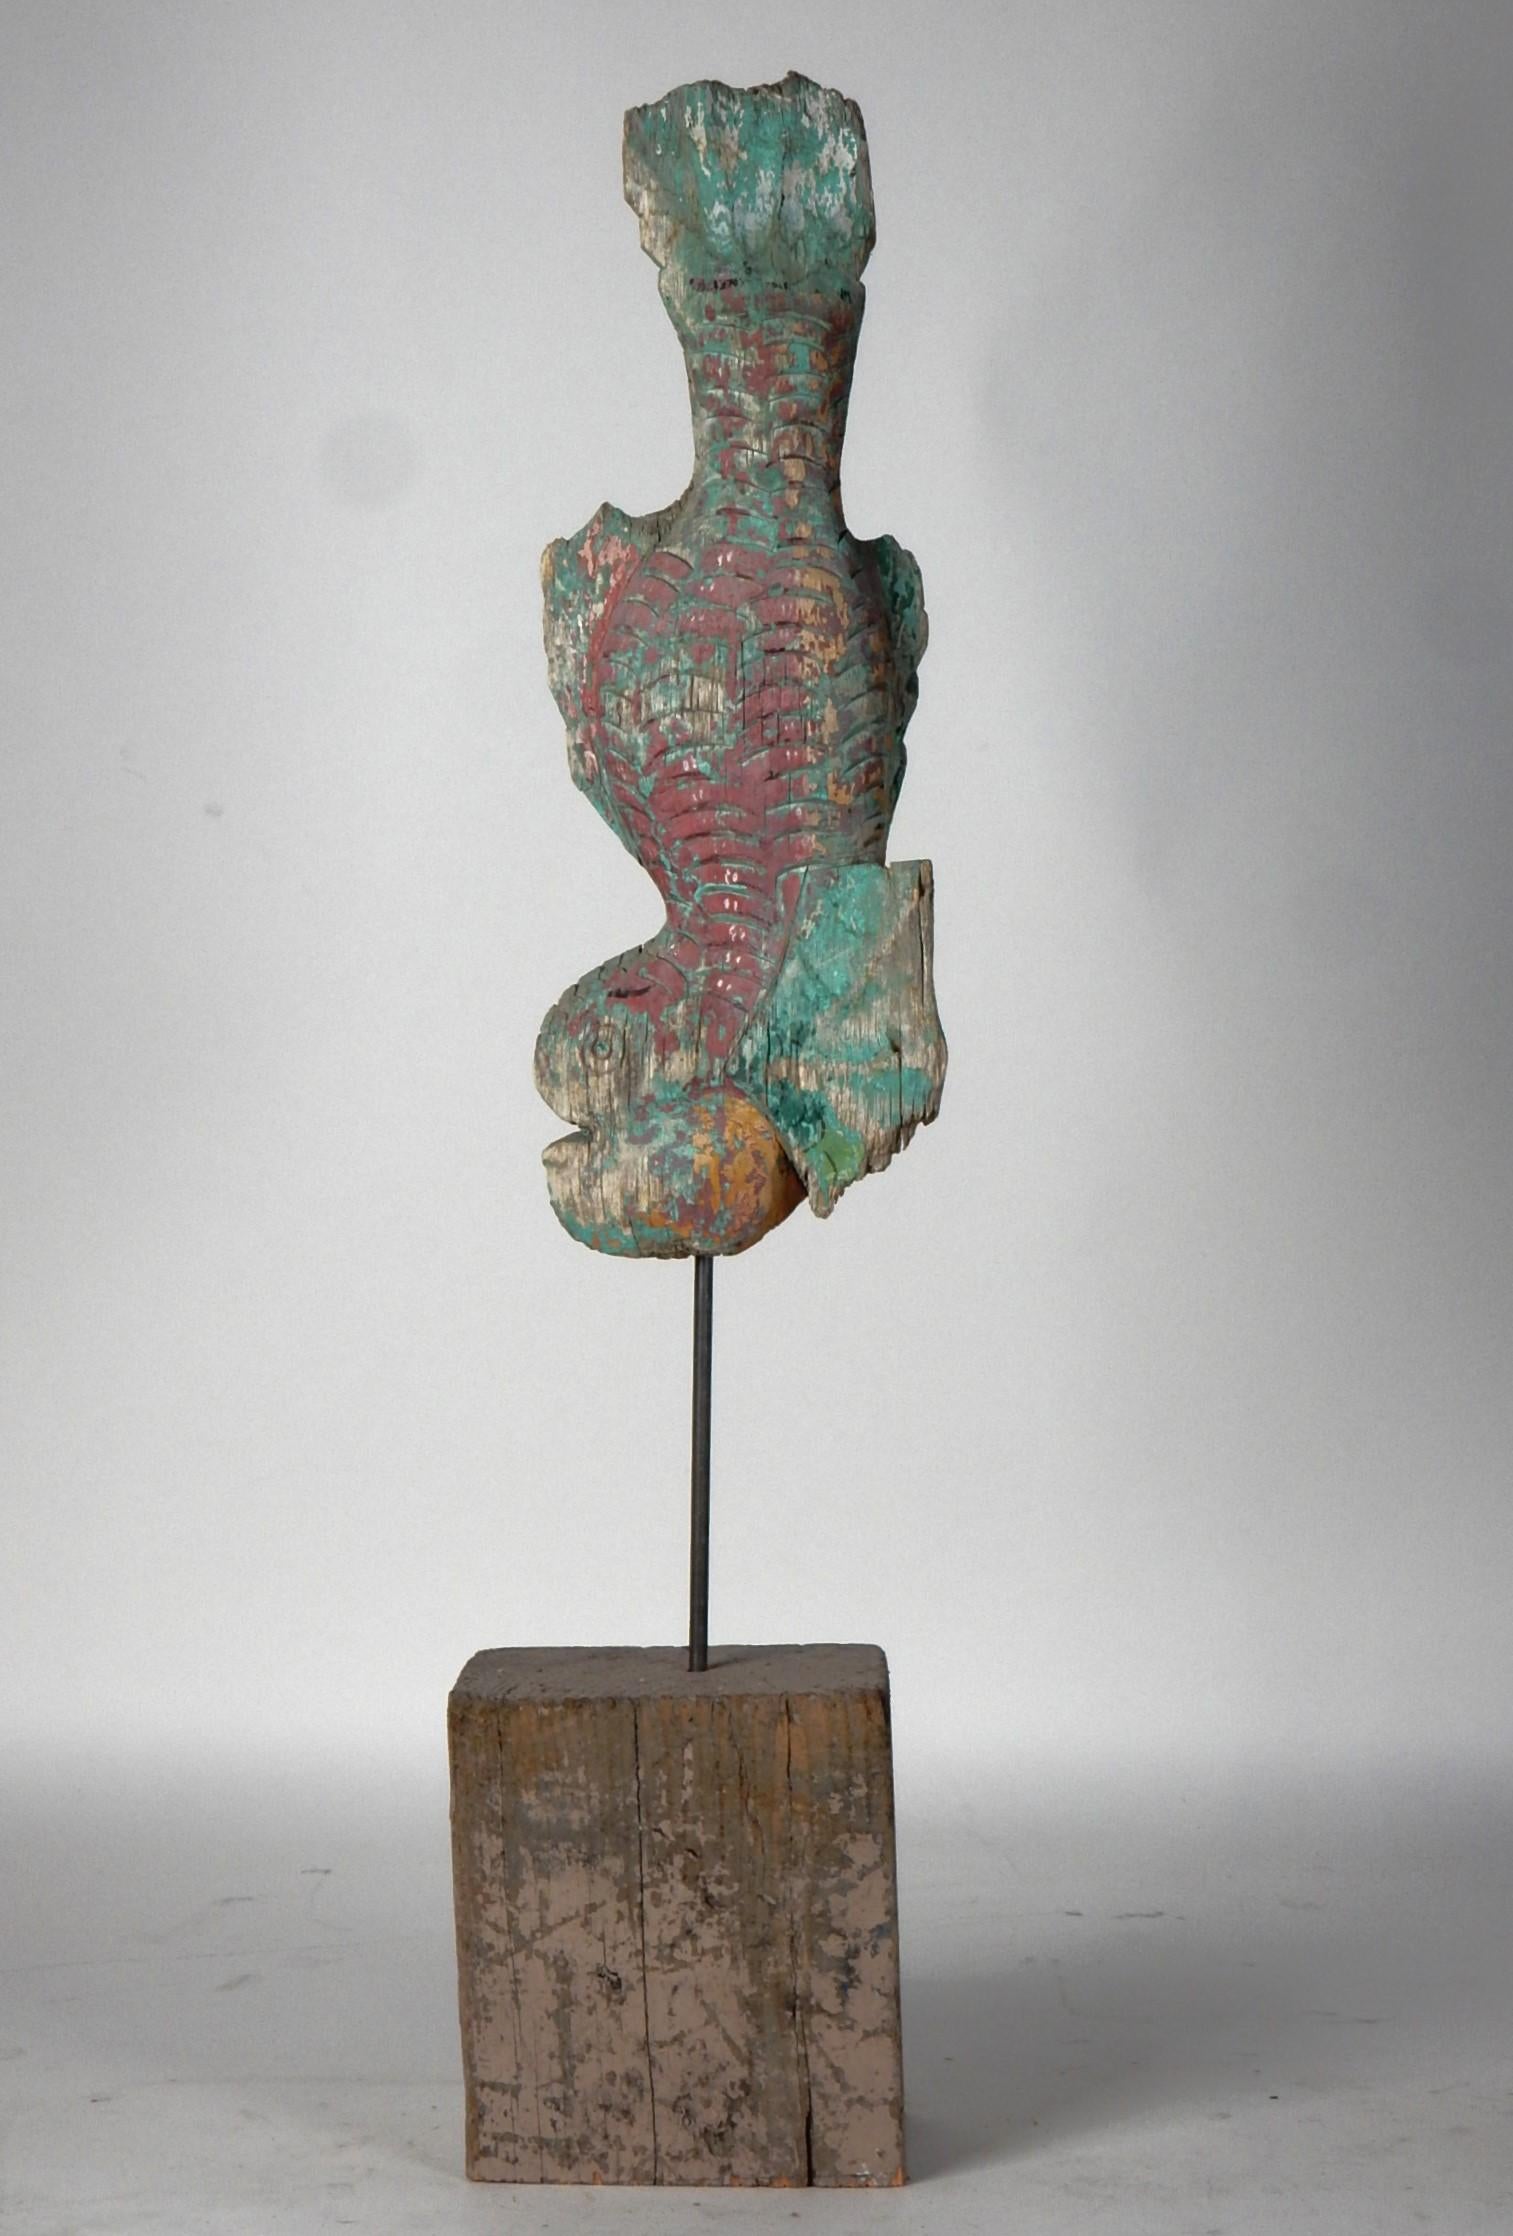 Ancienne grenouille polychrome sculptée à la main et éléments de temple koi.
Telle qu'elle a été trouvée, montrant l'usure du temps d'origine.
Chaque élément est percé sur une tige d'acier s'élevant au-dessus d'une base en bois massif.
La